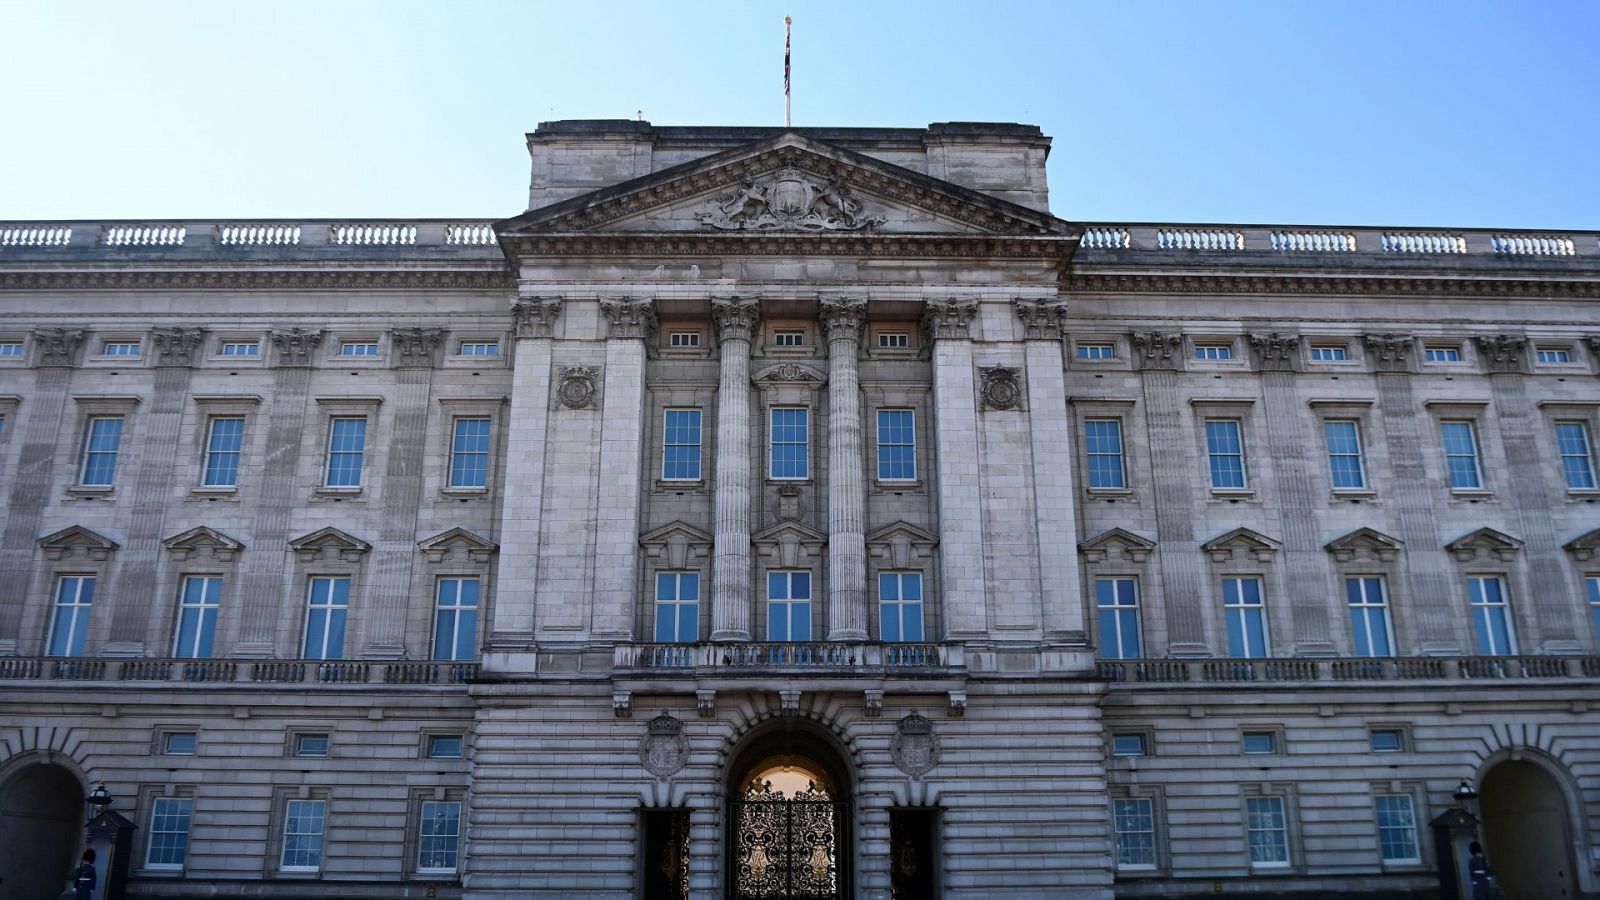 El Palacio de Buckingham, presionado ante las acusaciones de racismo